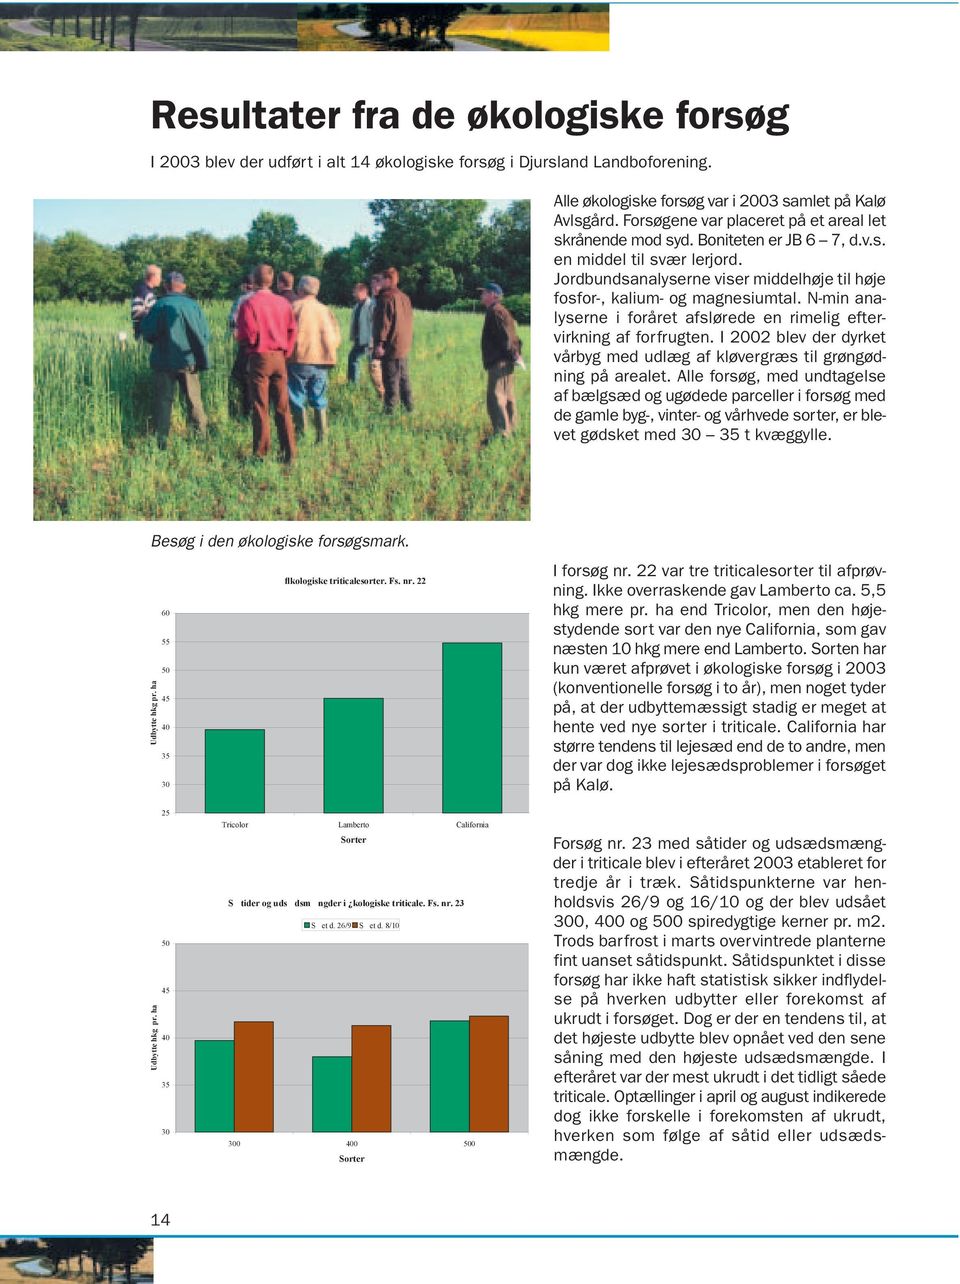 N-min analyserne i foråret afslørede en rimelig eftervirkning af forfrugten. I 2002 blev der dyrket vårbyg med udlæg af kløvergræs til grøngødning på arealet.